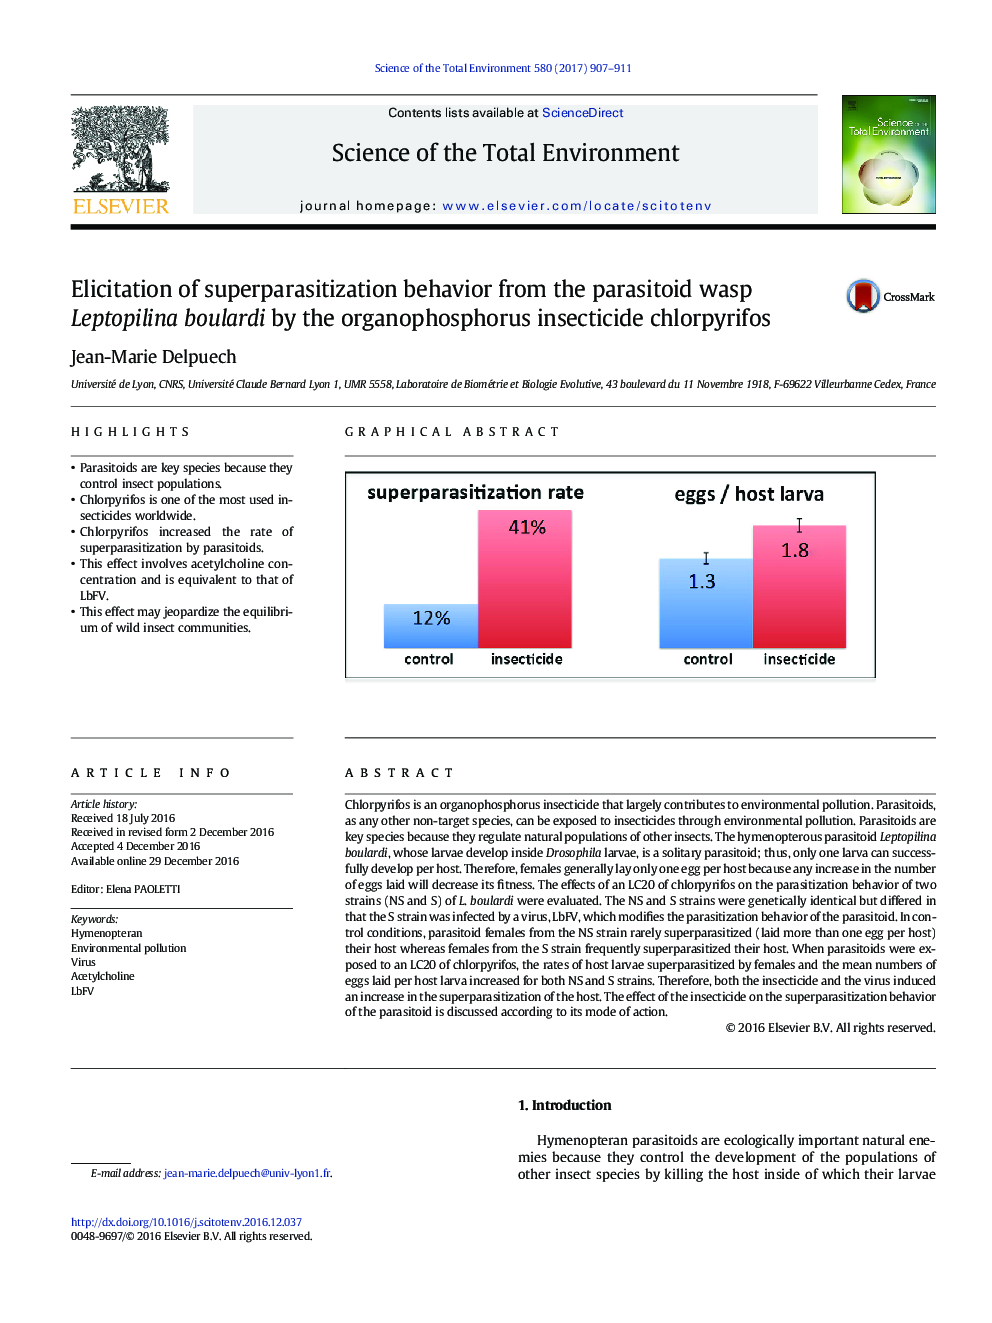 اصلاح رفتار سوپر پارازیتیزاسیون از اسپپه انگور انگل لپتپیلینا بولاردی توسط کلروفیریوف حشره کش های ارگانوفسفره 